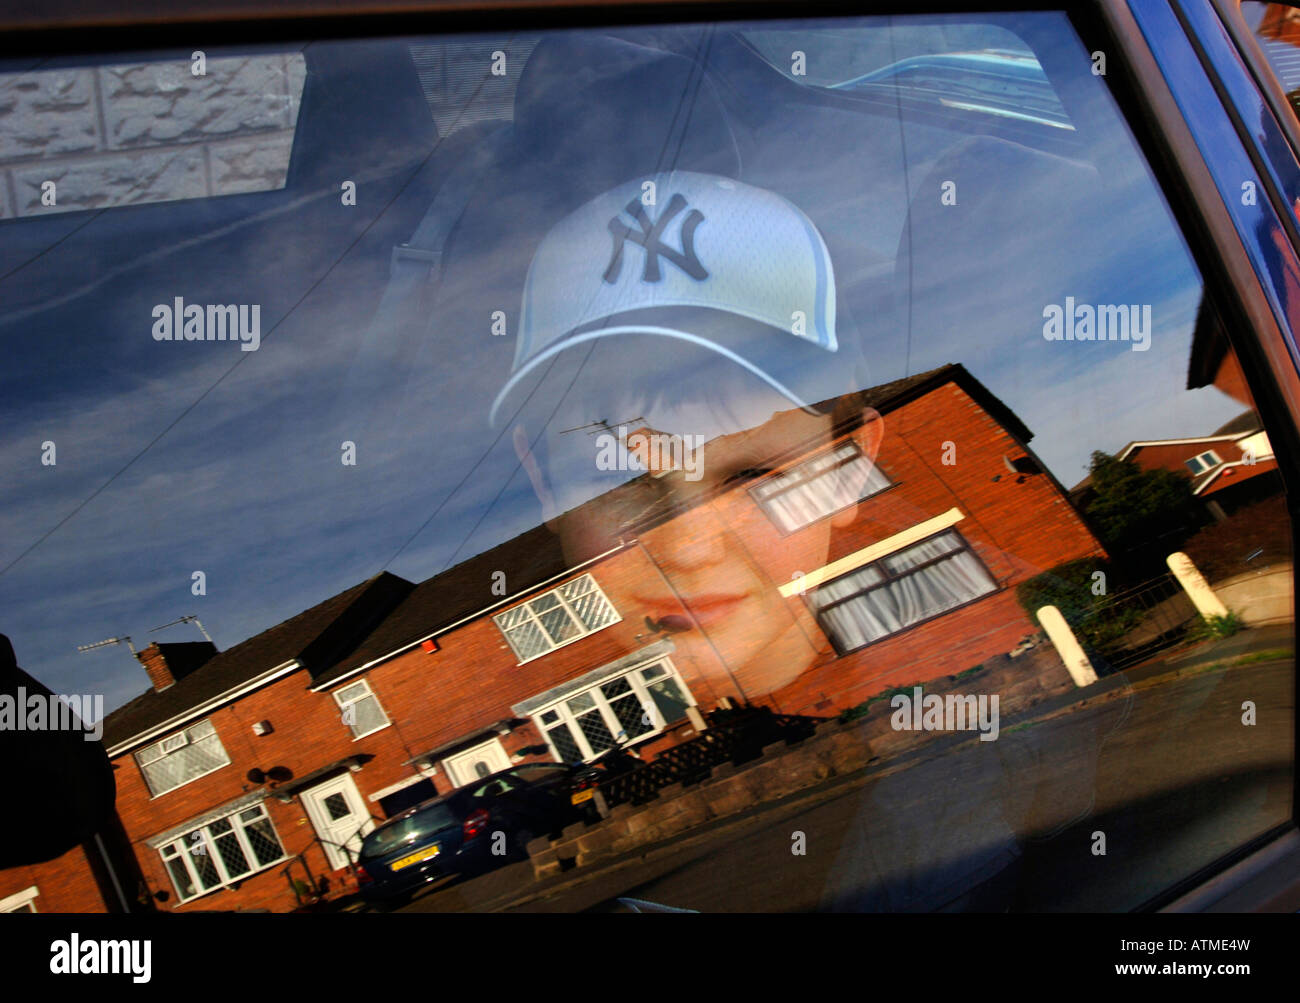 Un garçon de 13 ans assis dans une voiture, avec des maisons qui se reflète dans le verre.formant une image composite surréaliste. Banque D'Images